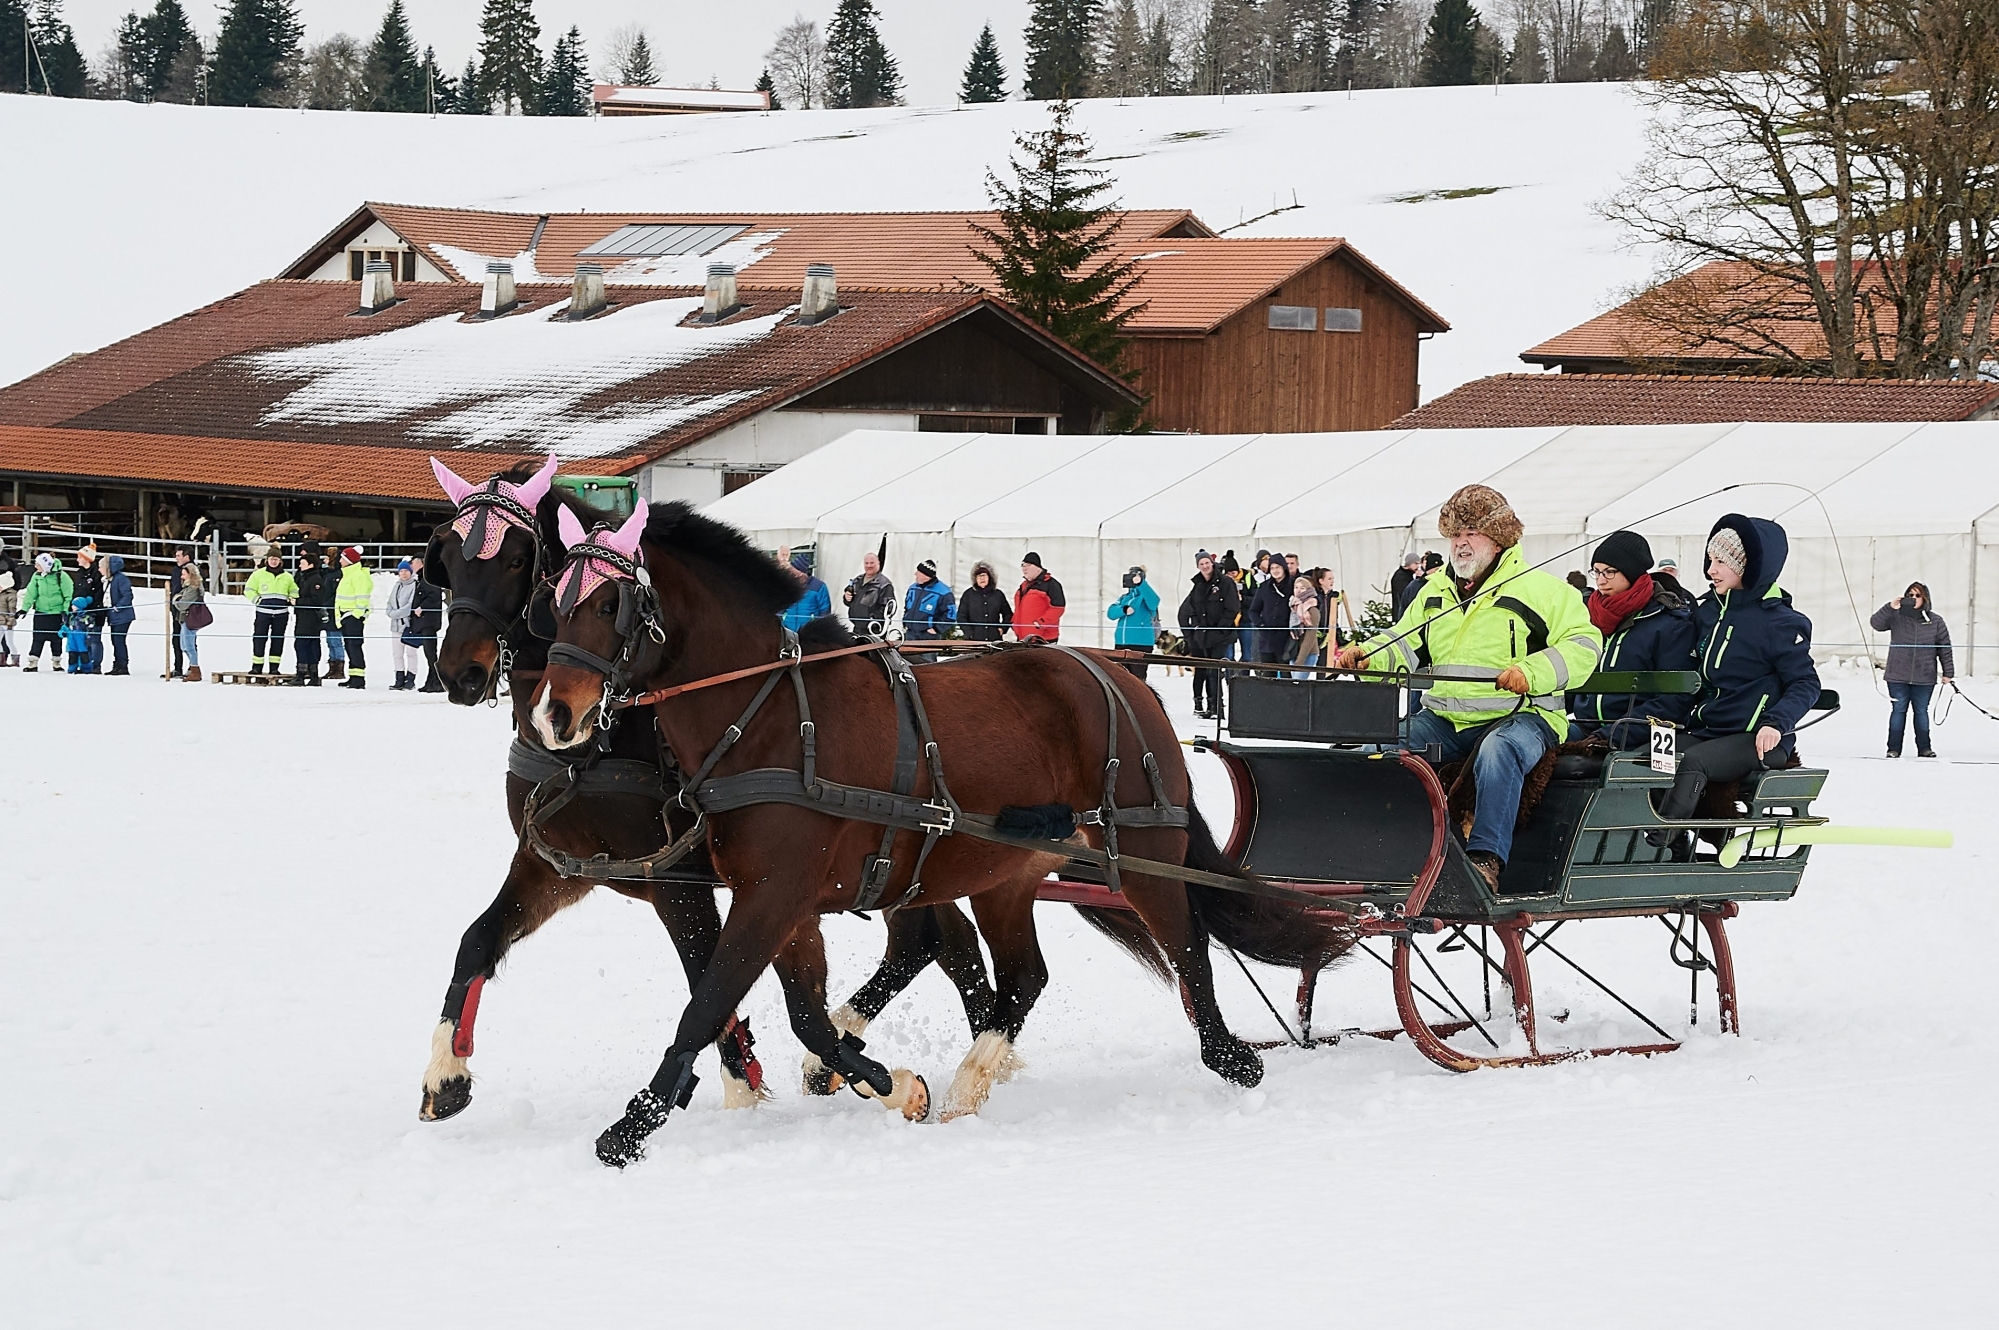 La Journée équestre de Muriaux accueillait notamment des courses d'attelages sur neige.